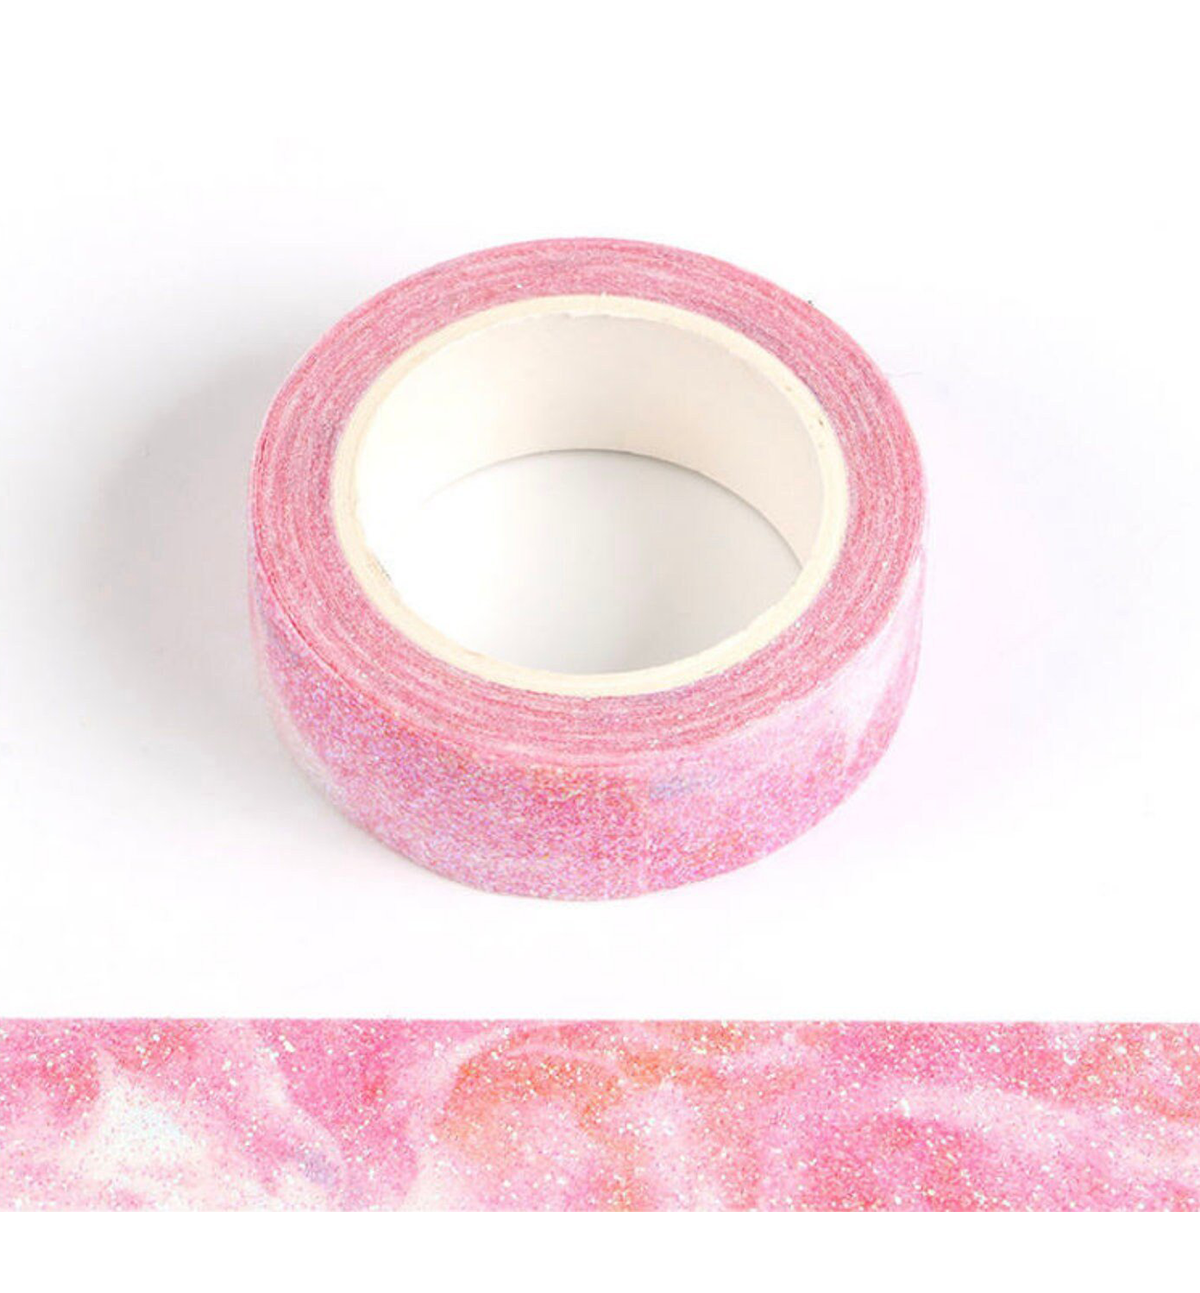 Pink Aurora Sparkle Washi Tape